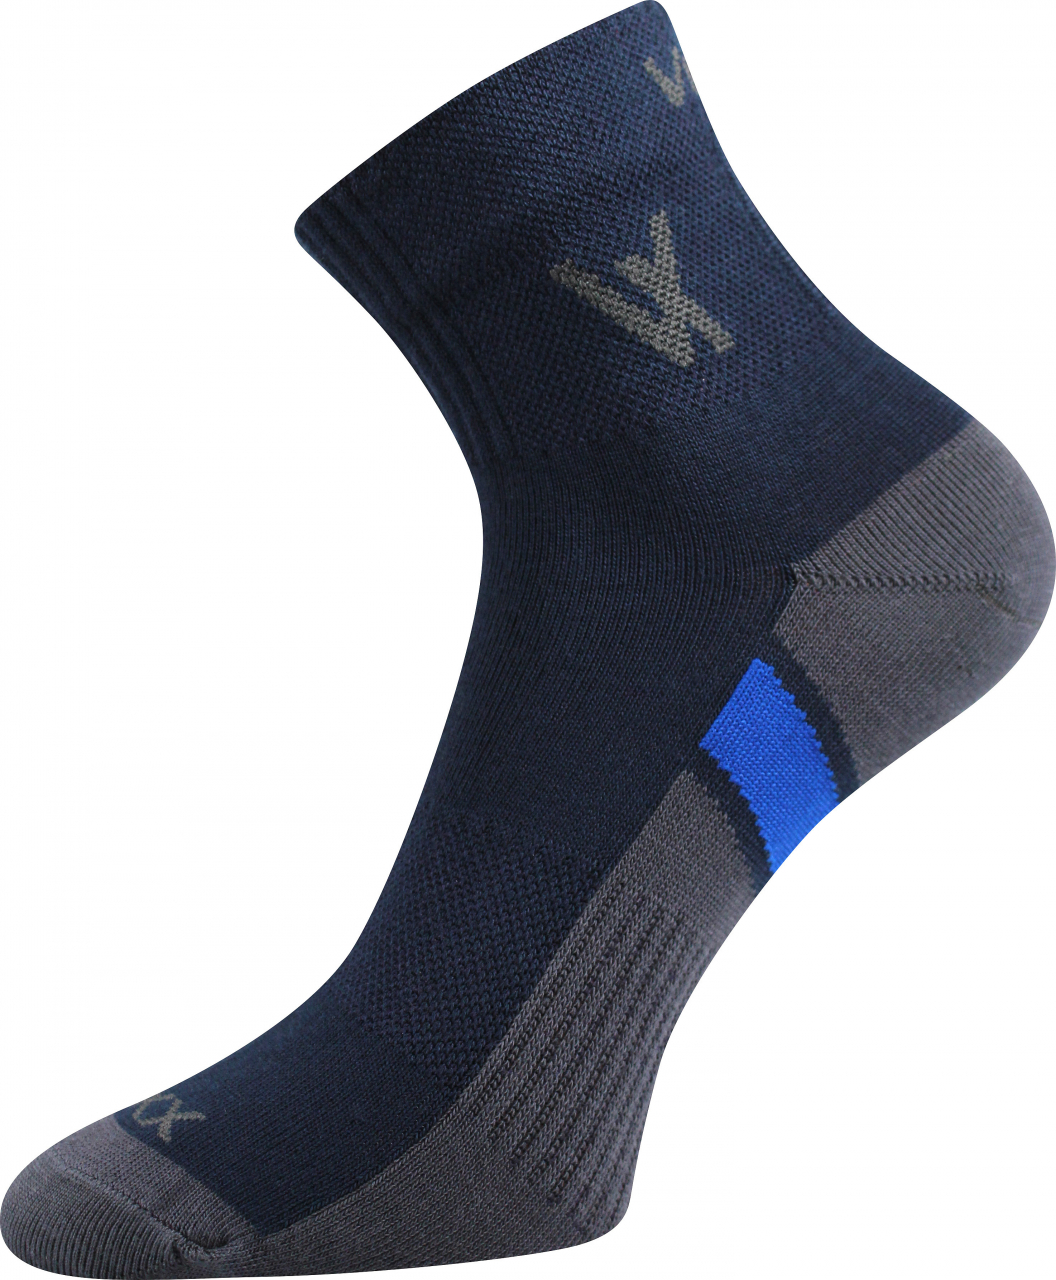 Ponožky sportovní Voxx Neo - navy, 35-38